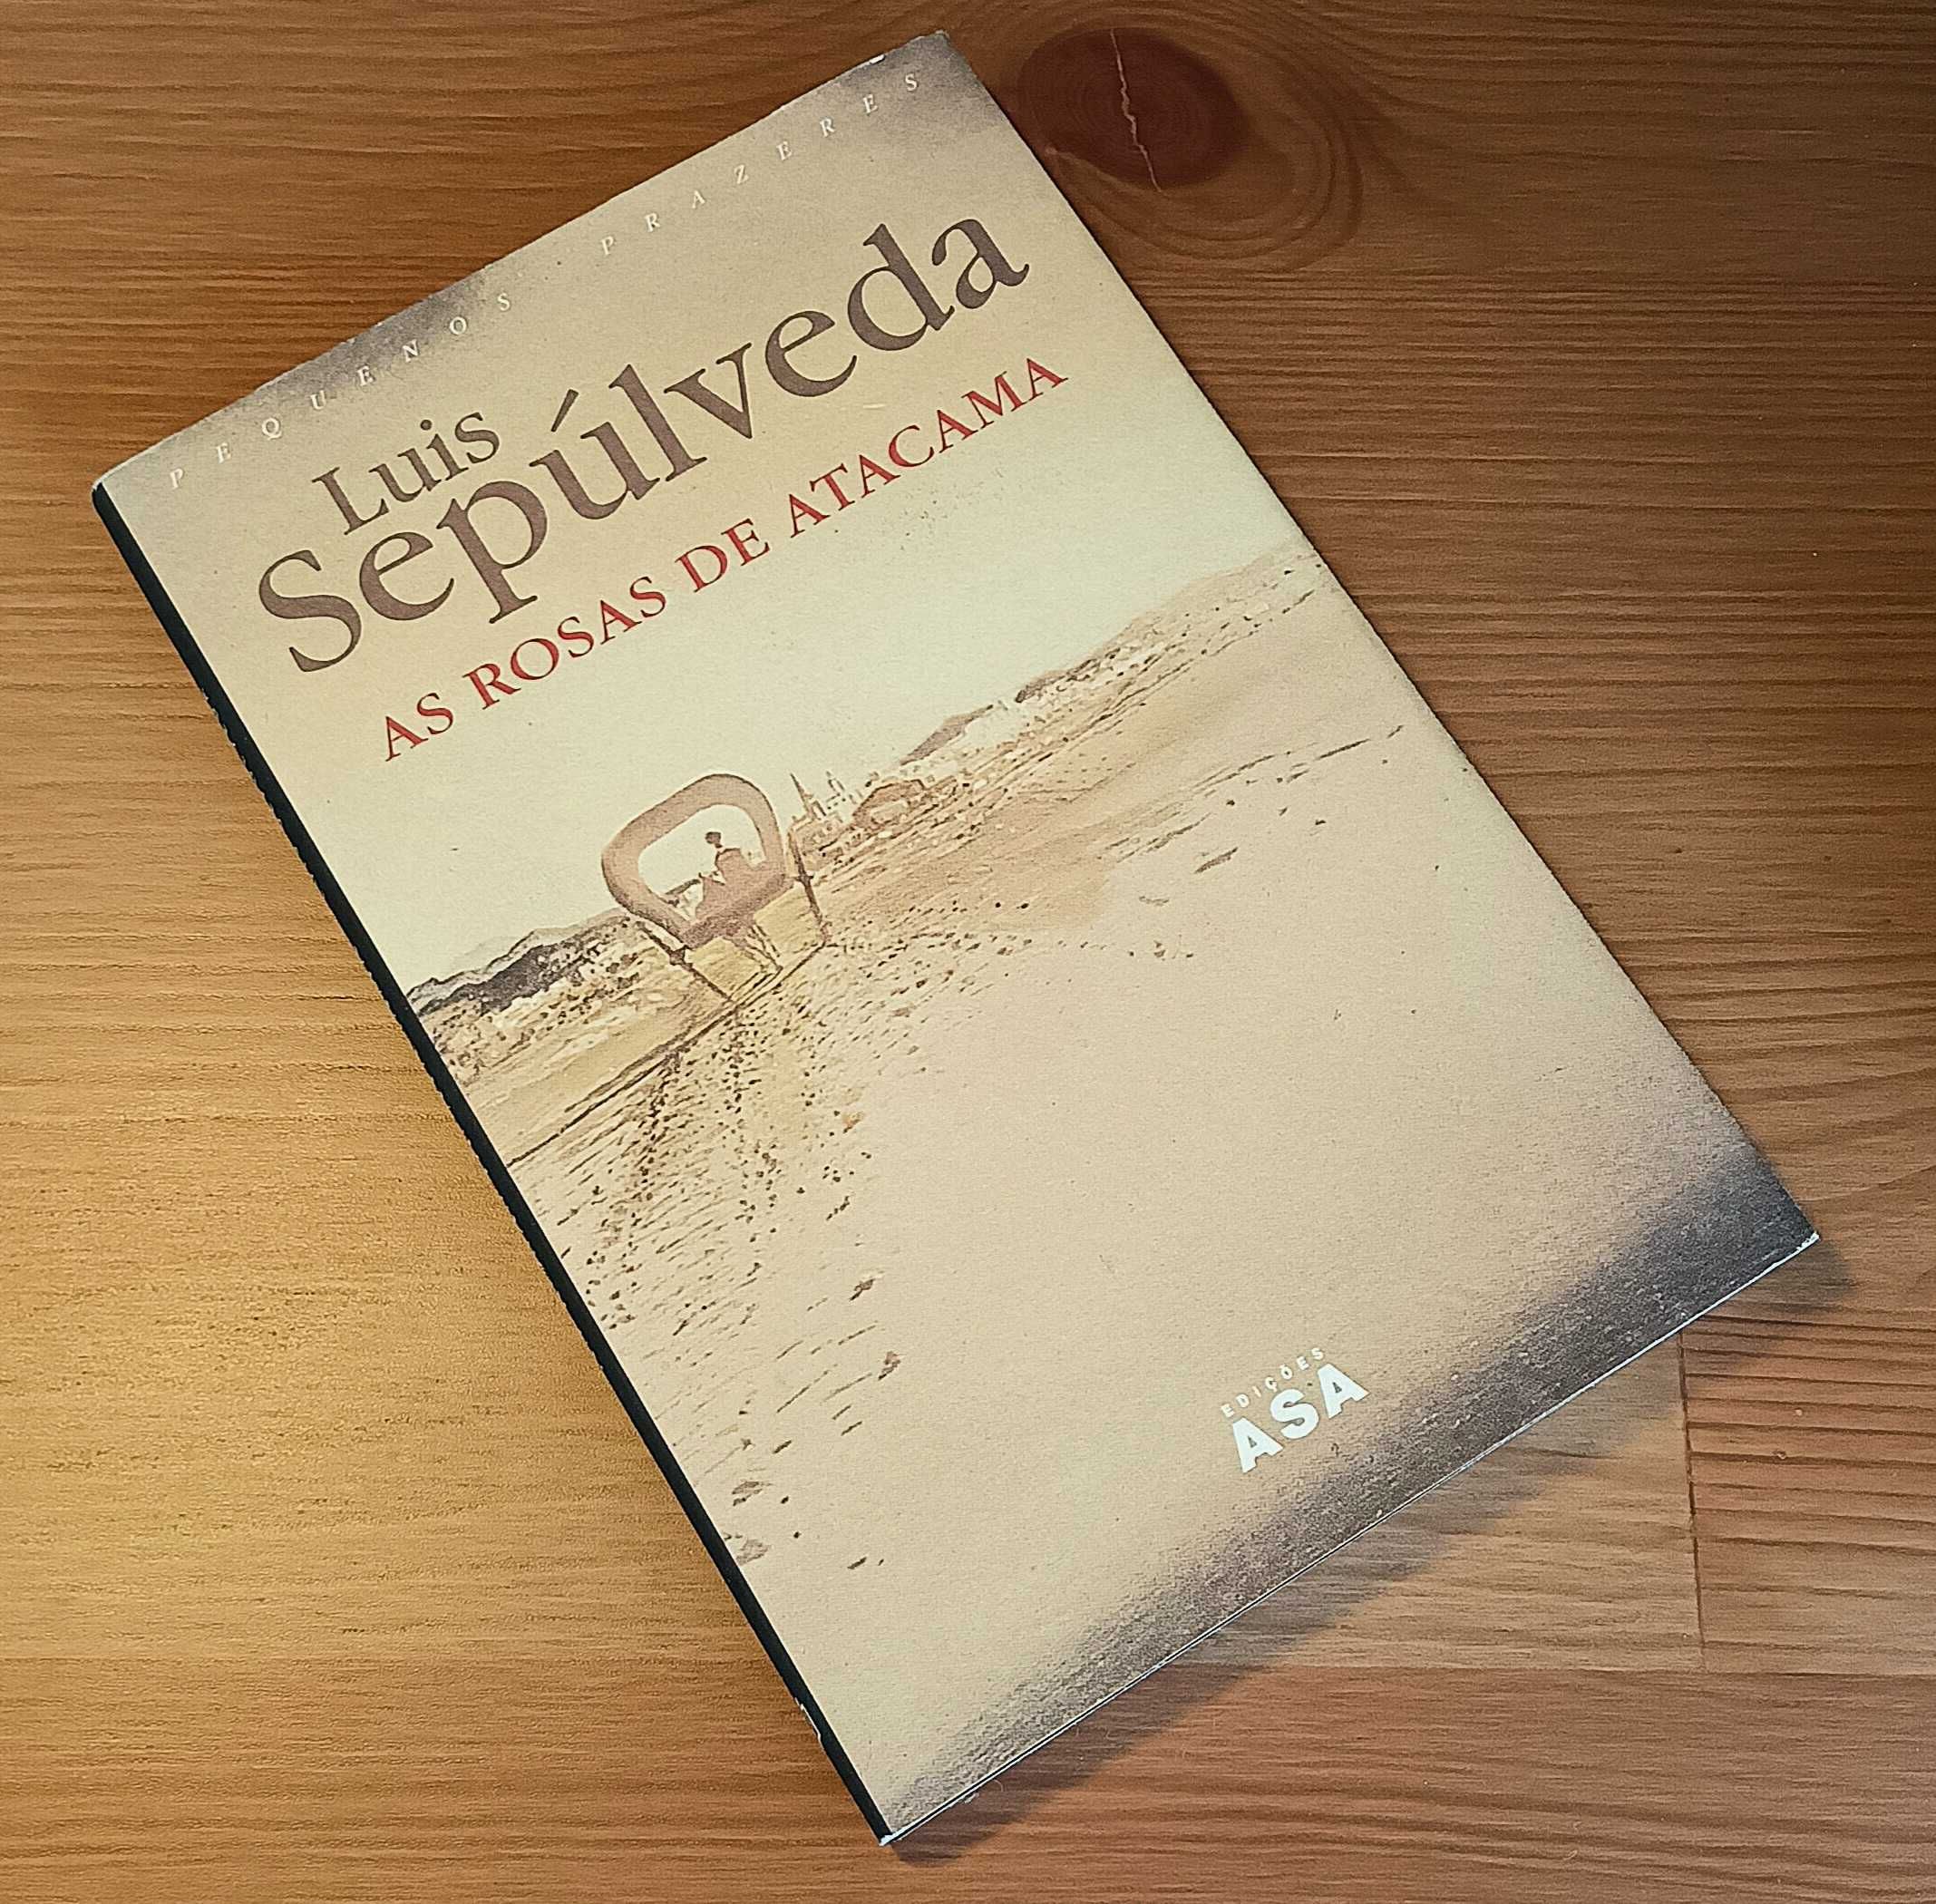 Livro de Luis Sepúlveda "As rosas de Atacama"